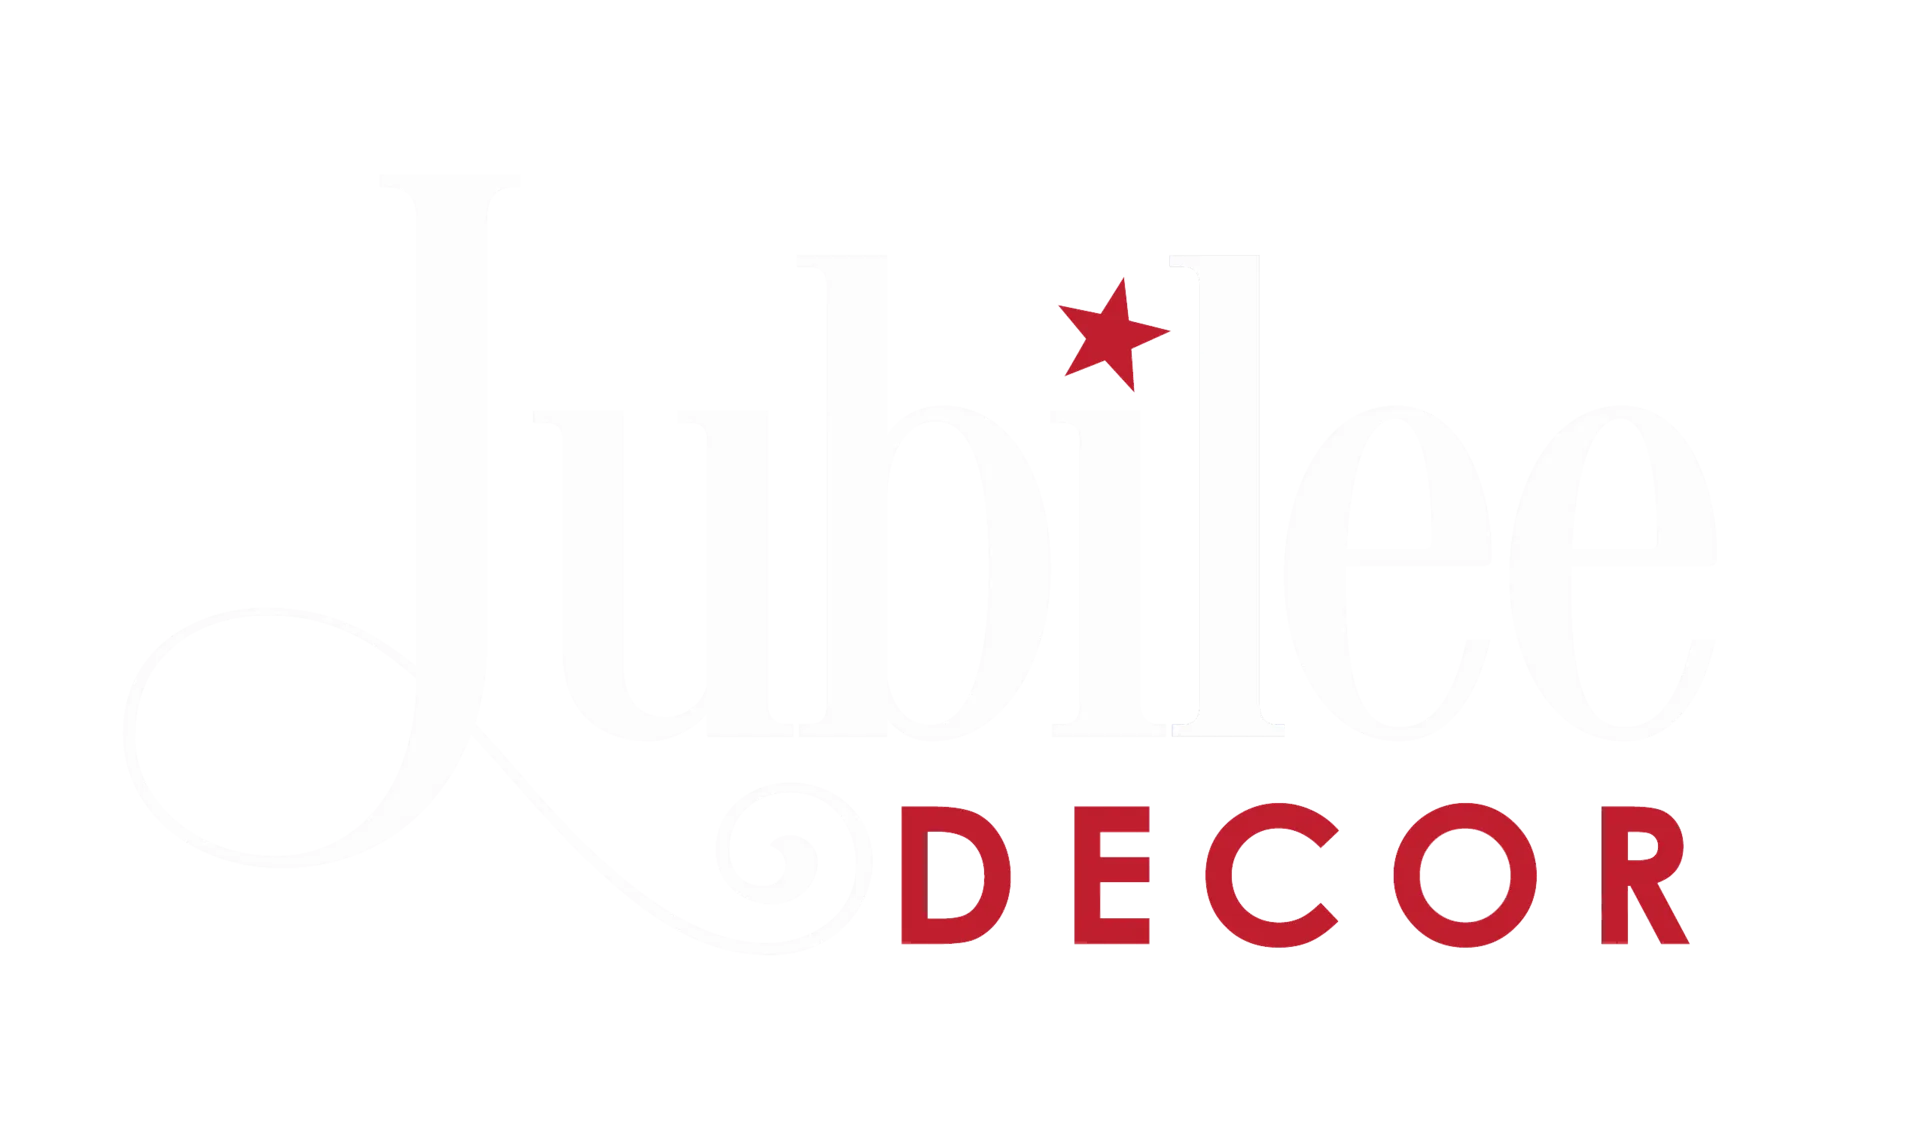 Jubilee Decor